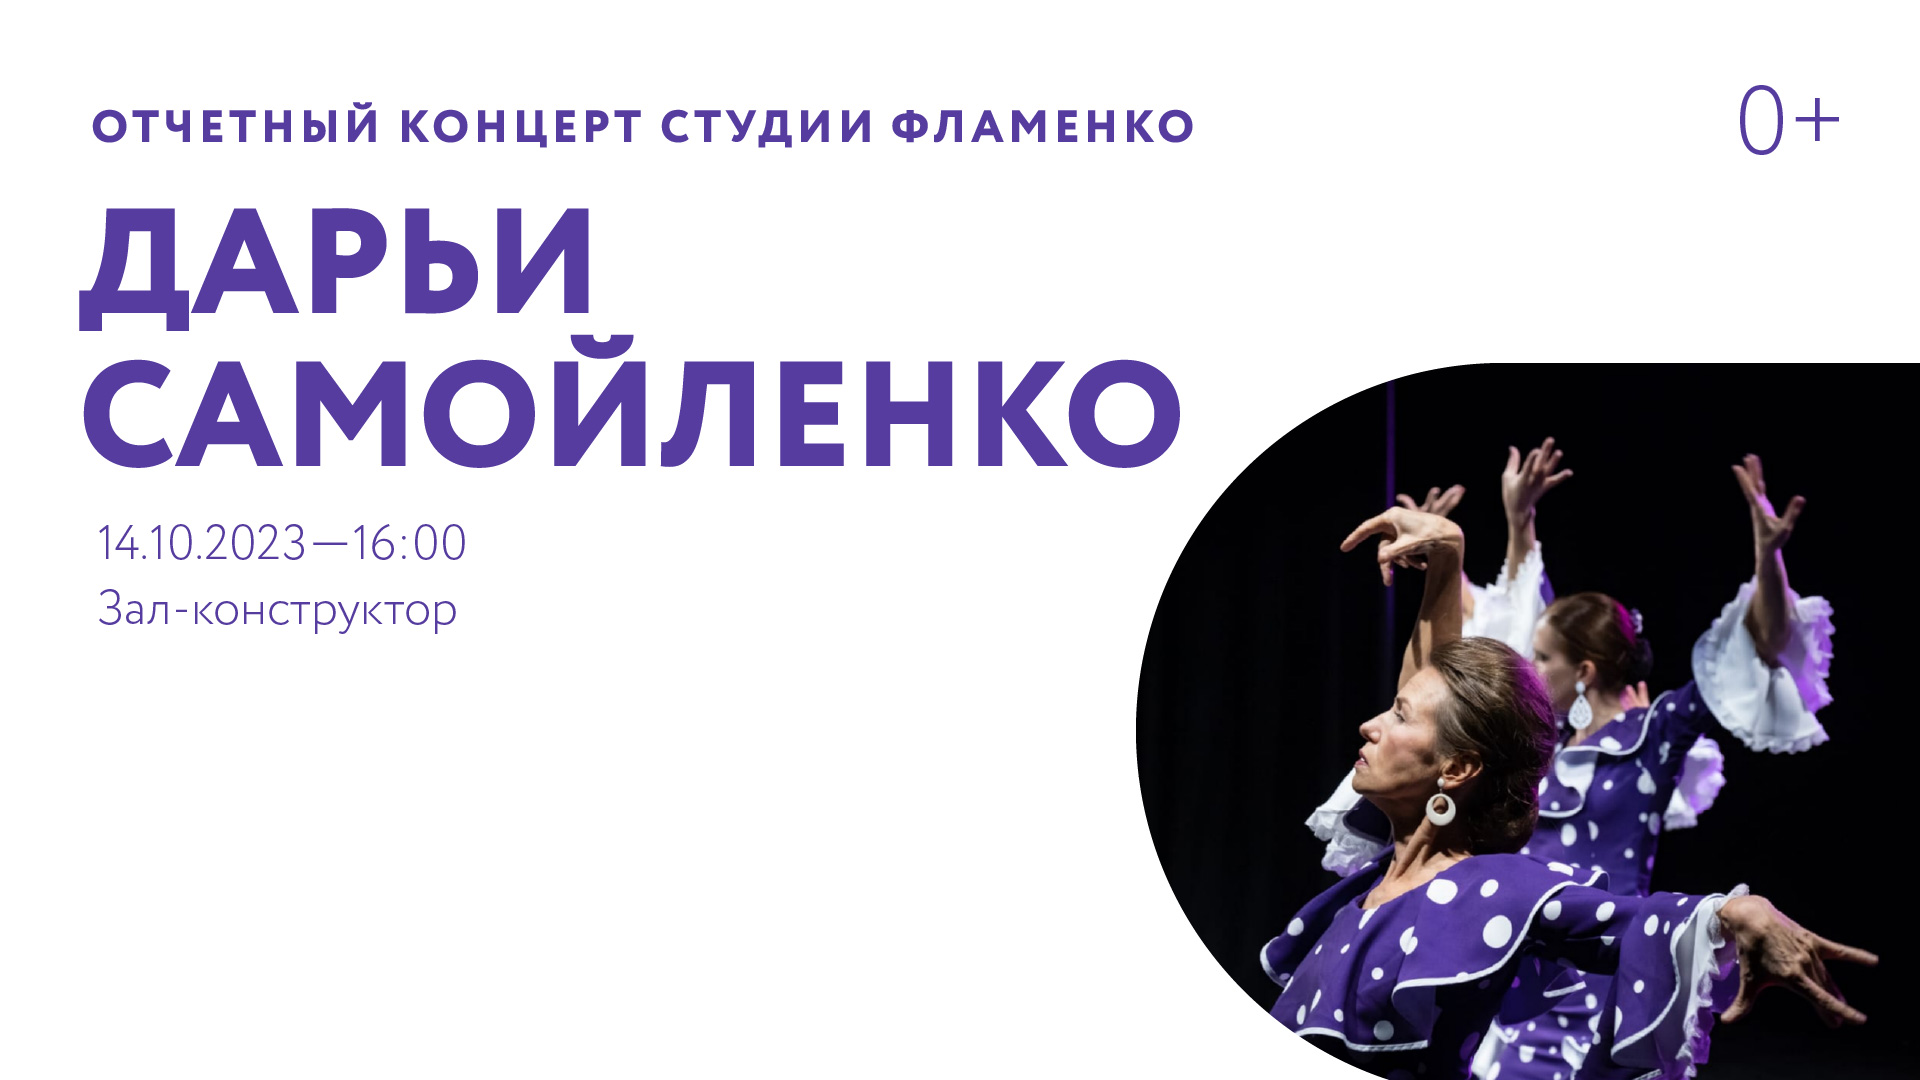 Отчетный концерт студии фламенко Дарьи Самойленко